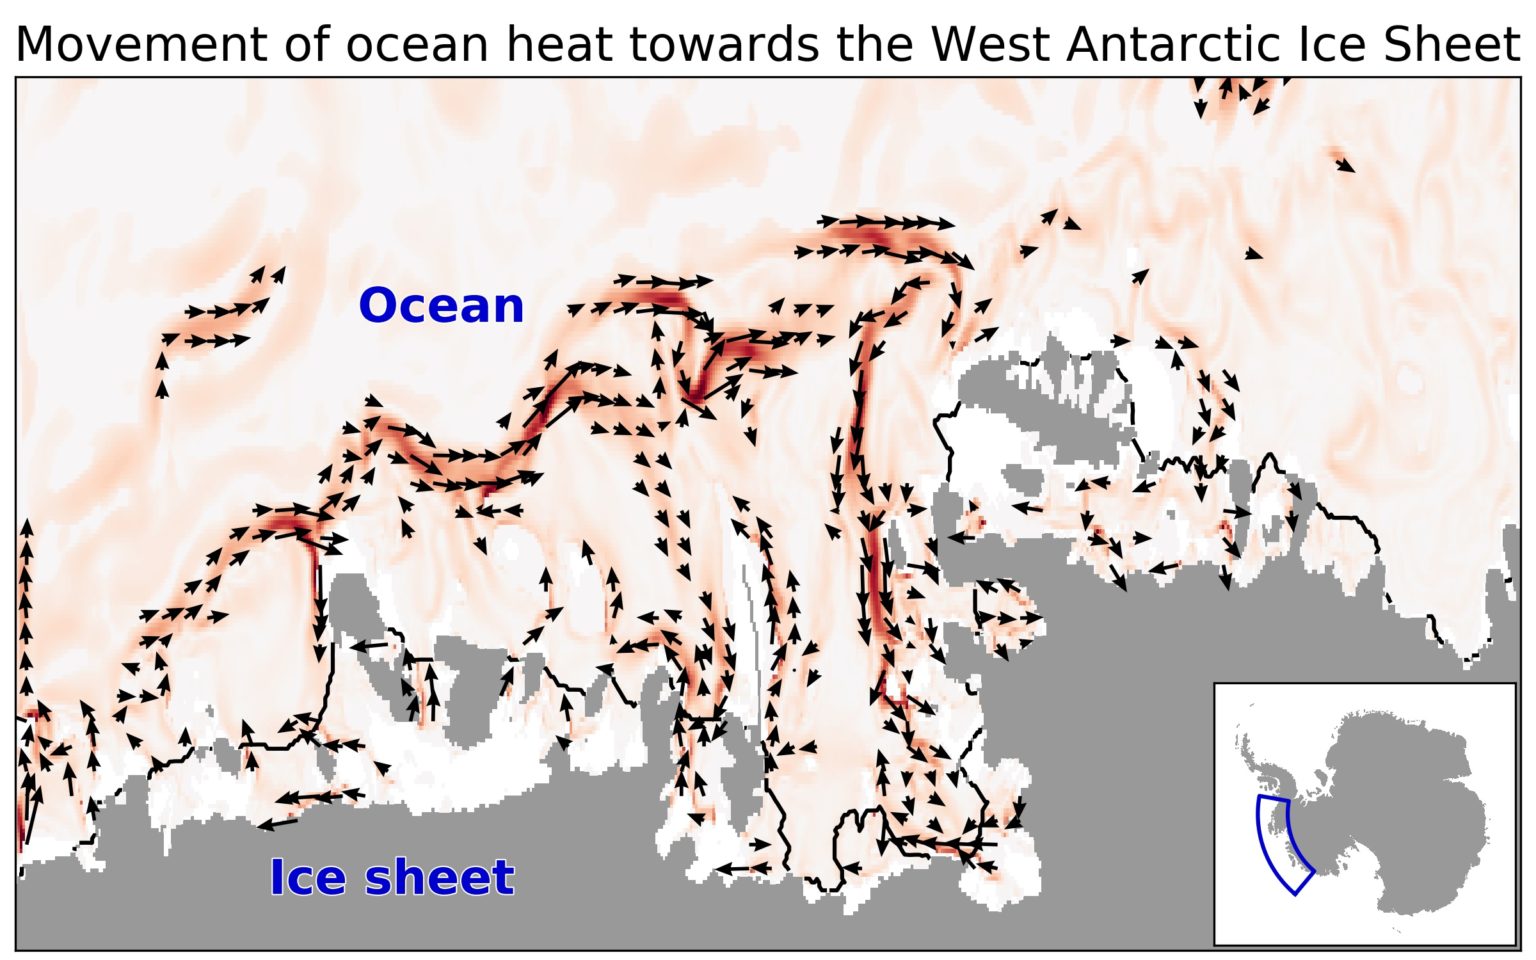 Infográfico mostrando o fortalecimento das correntes de água quente no Mar de Amundsen